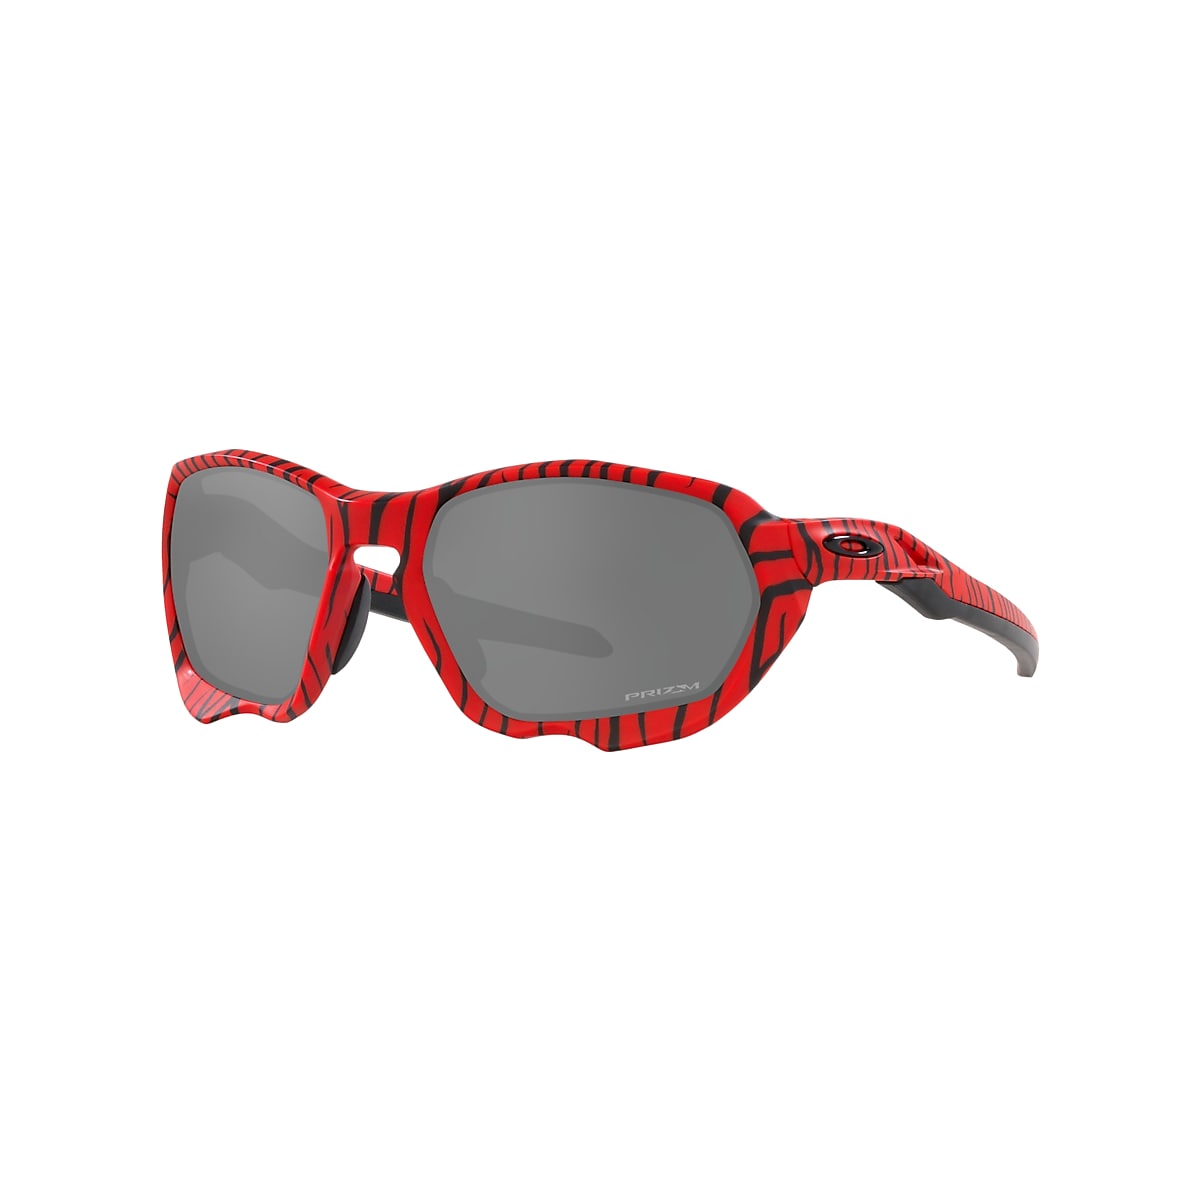 OAKLEY OO9019 Plazma Red Tiger Red Tiger - Men Sunglasses, Prizm Black Lens